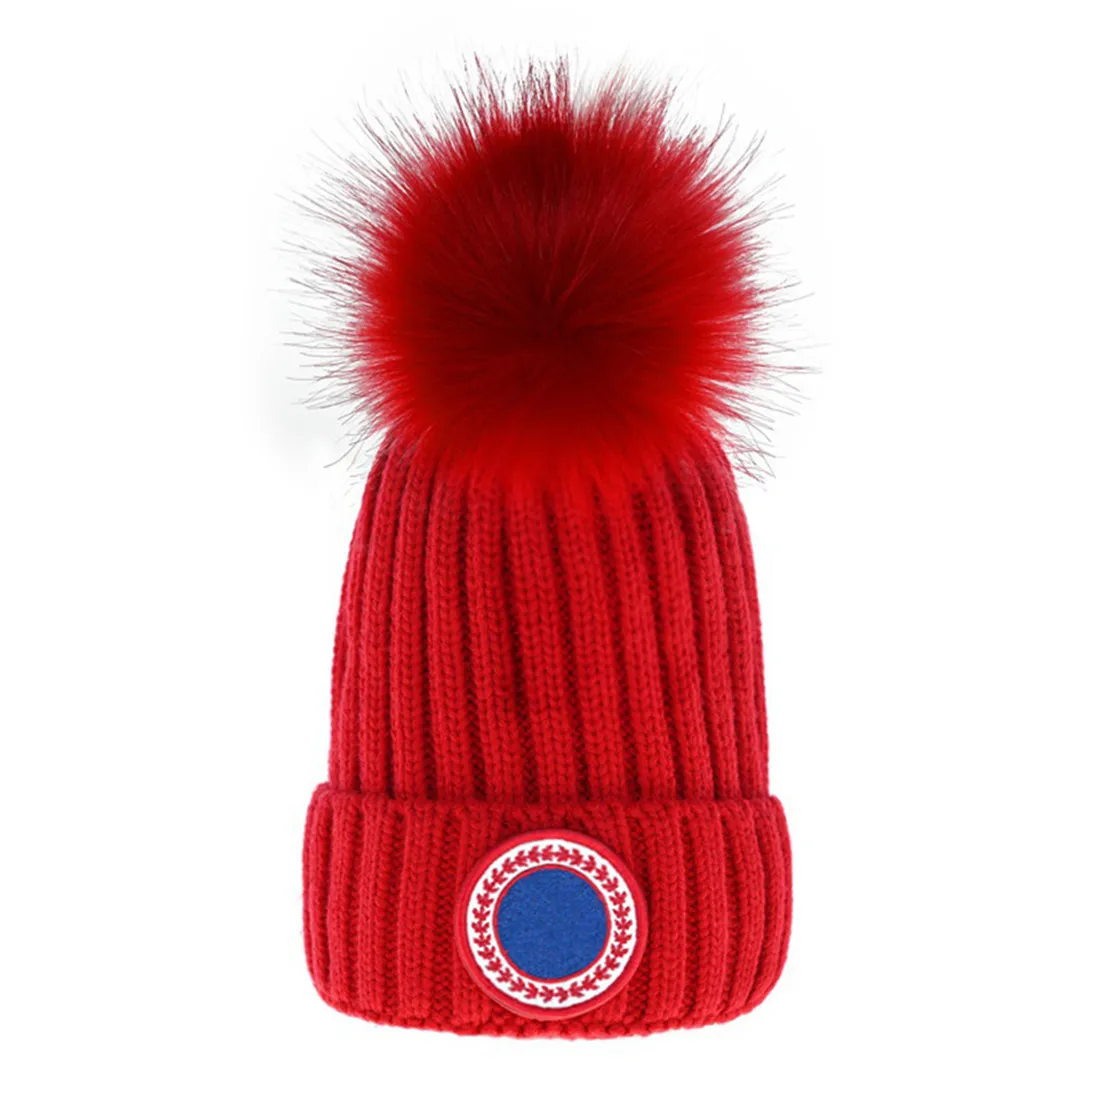 Moda Tasarımcı Beanie Hats Lüks Örme Şapka Erkekler için Kırış Kapak Unisex Kashmere Bonnet Sıradan Sınırsız Kapaklar Sıcak Kaşmir Tatlı Aksesuarlar Erkek W-1